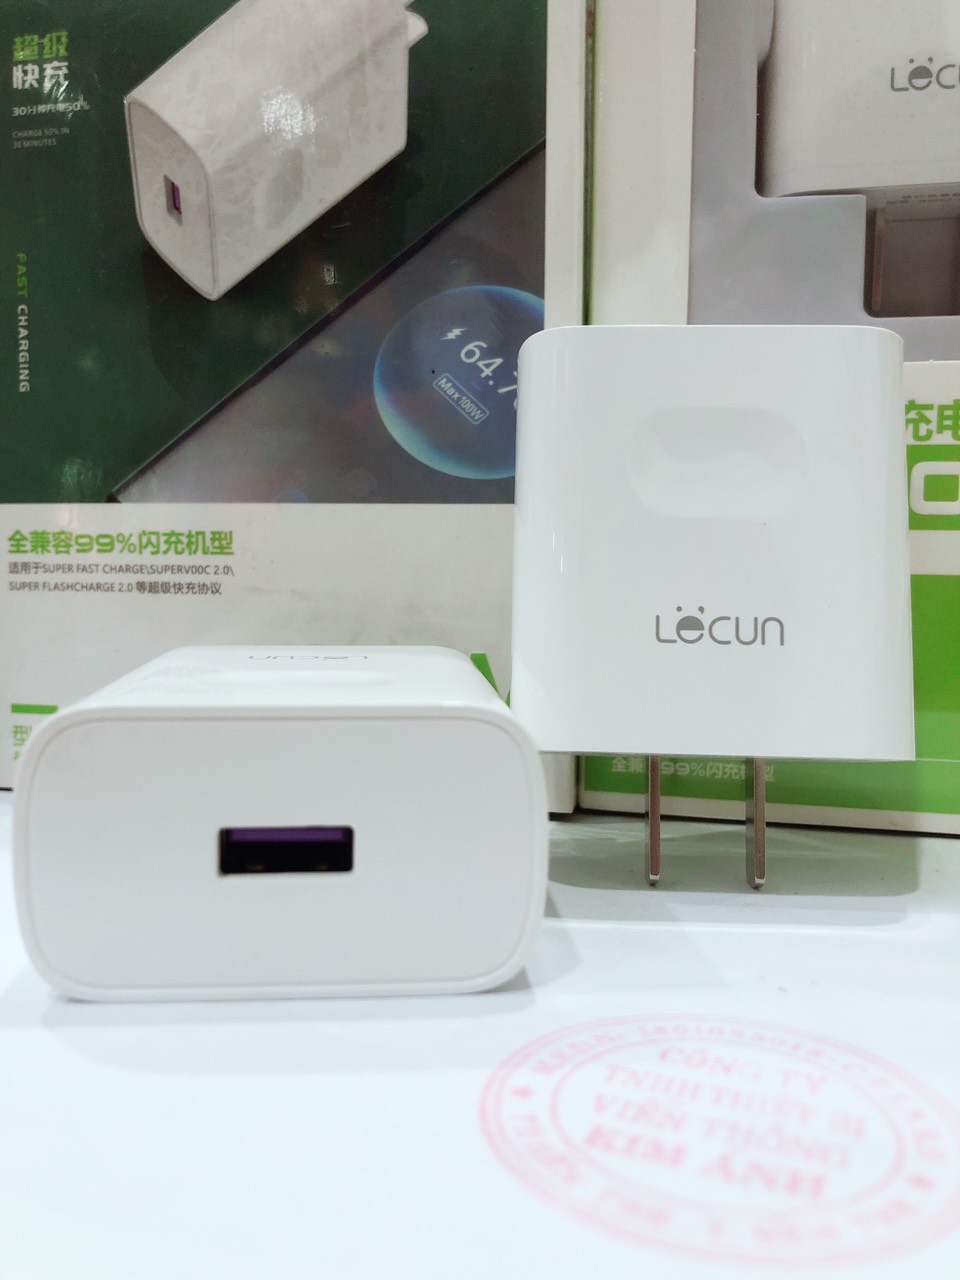 Cóc Sạc Nhanh hiệu Lecun C51 công suất cao lên đến 100W, có chip nhận dạng nguồn điện thông minh, hàng nhập khẩu